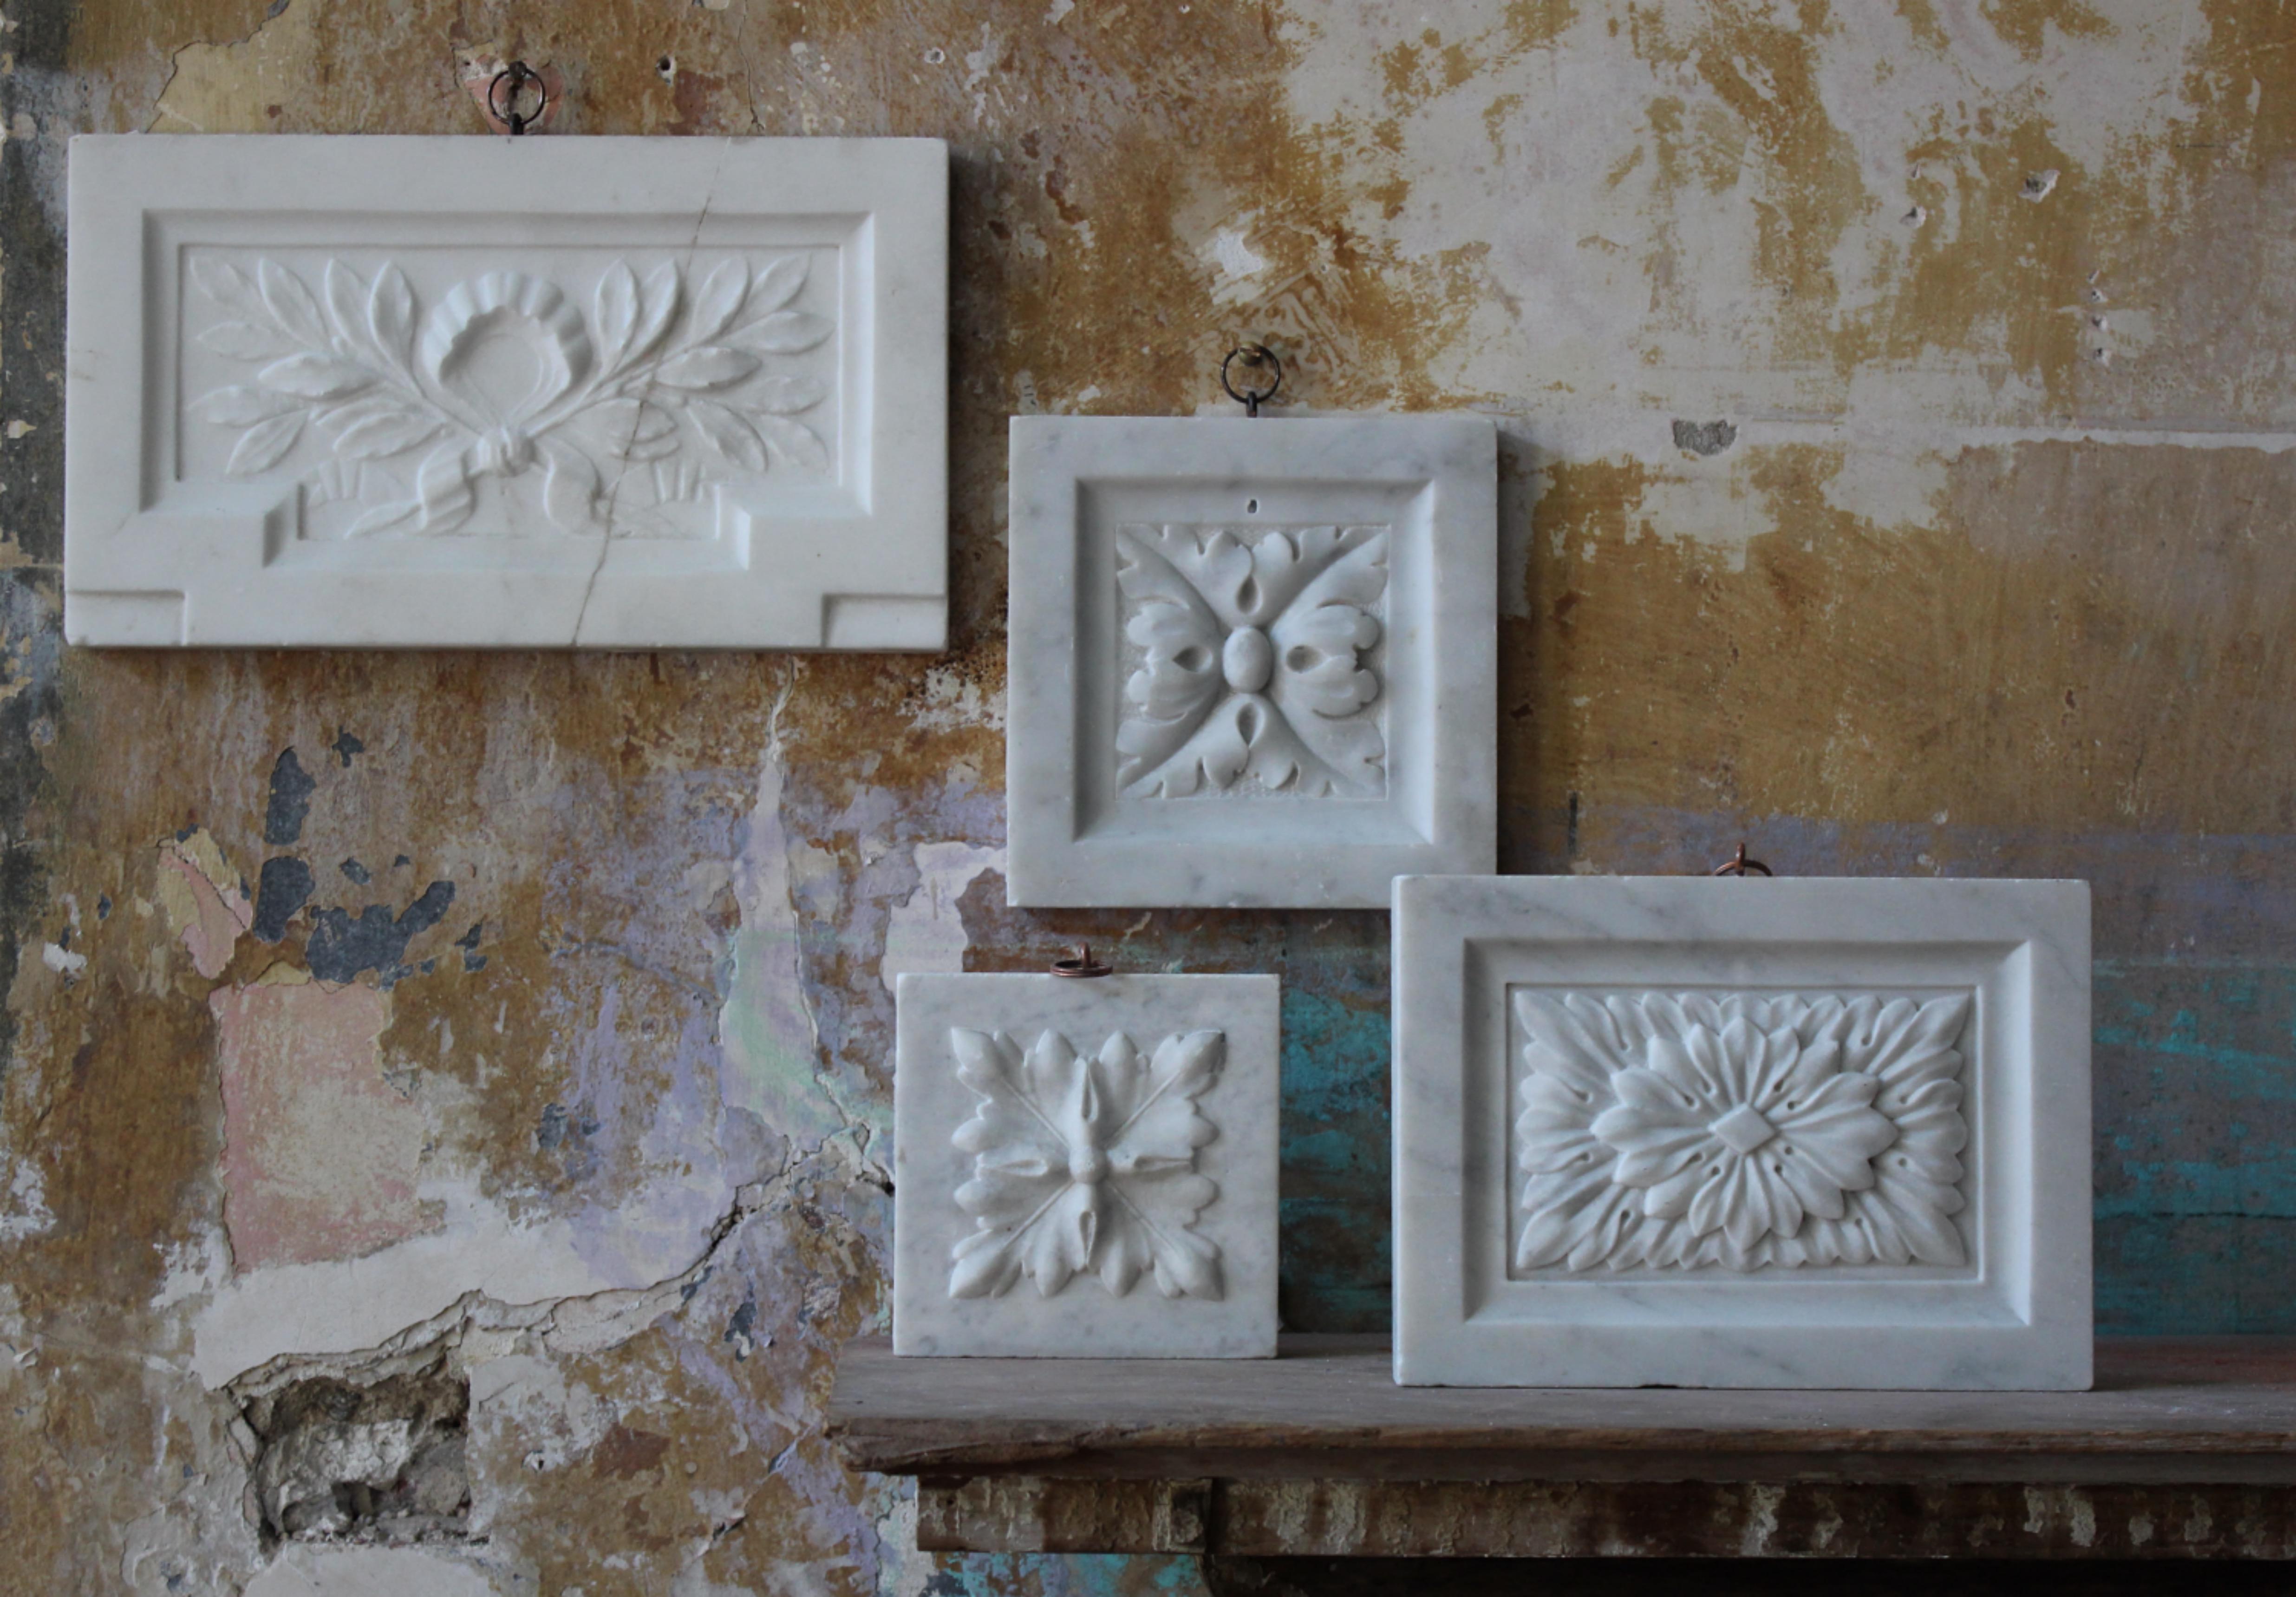 
Collection S du 19e siècle de quatre tablettes de marbre sculptées à la main avec un décor organique faisant partie d'un élément architectural intérieur ou d'une cheminée.

Les sections sont extrêmement bien sculptées, nettes et présentent une